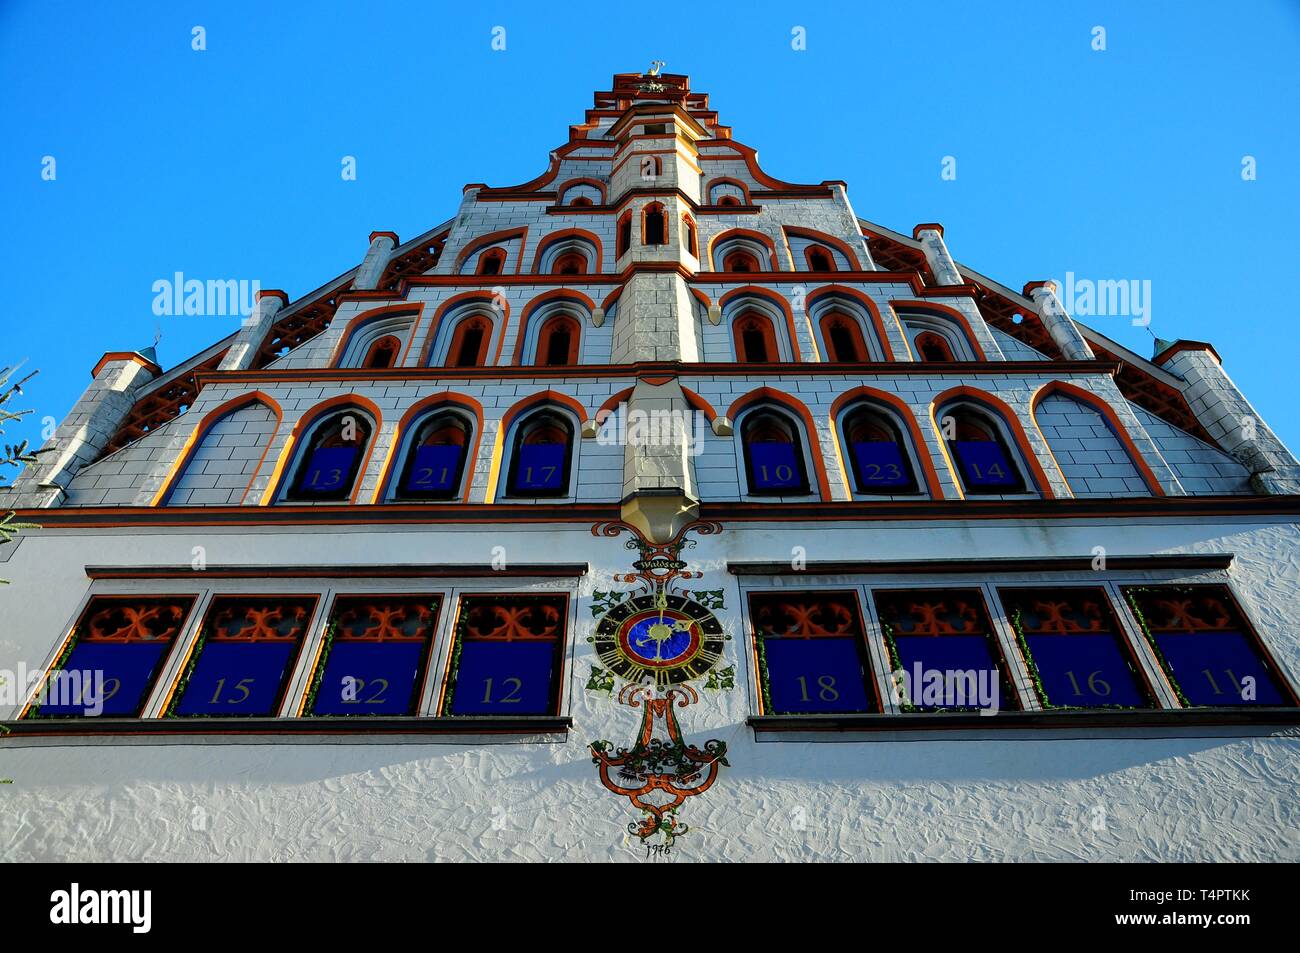 Fassade mit Adventskalender, Rathaus, Bad Waldsee, Oberschwaben,  Baden-Württemberg, Deutschland, Europa Stockfotografie - Alamy